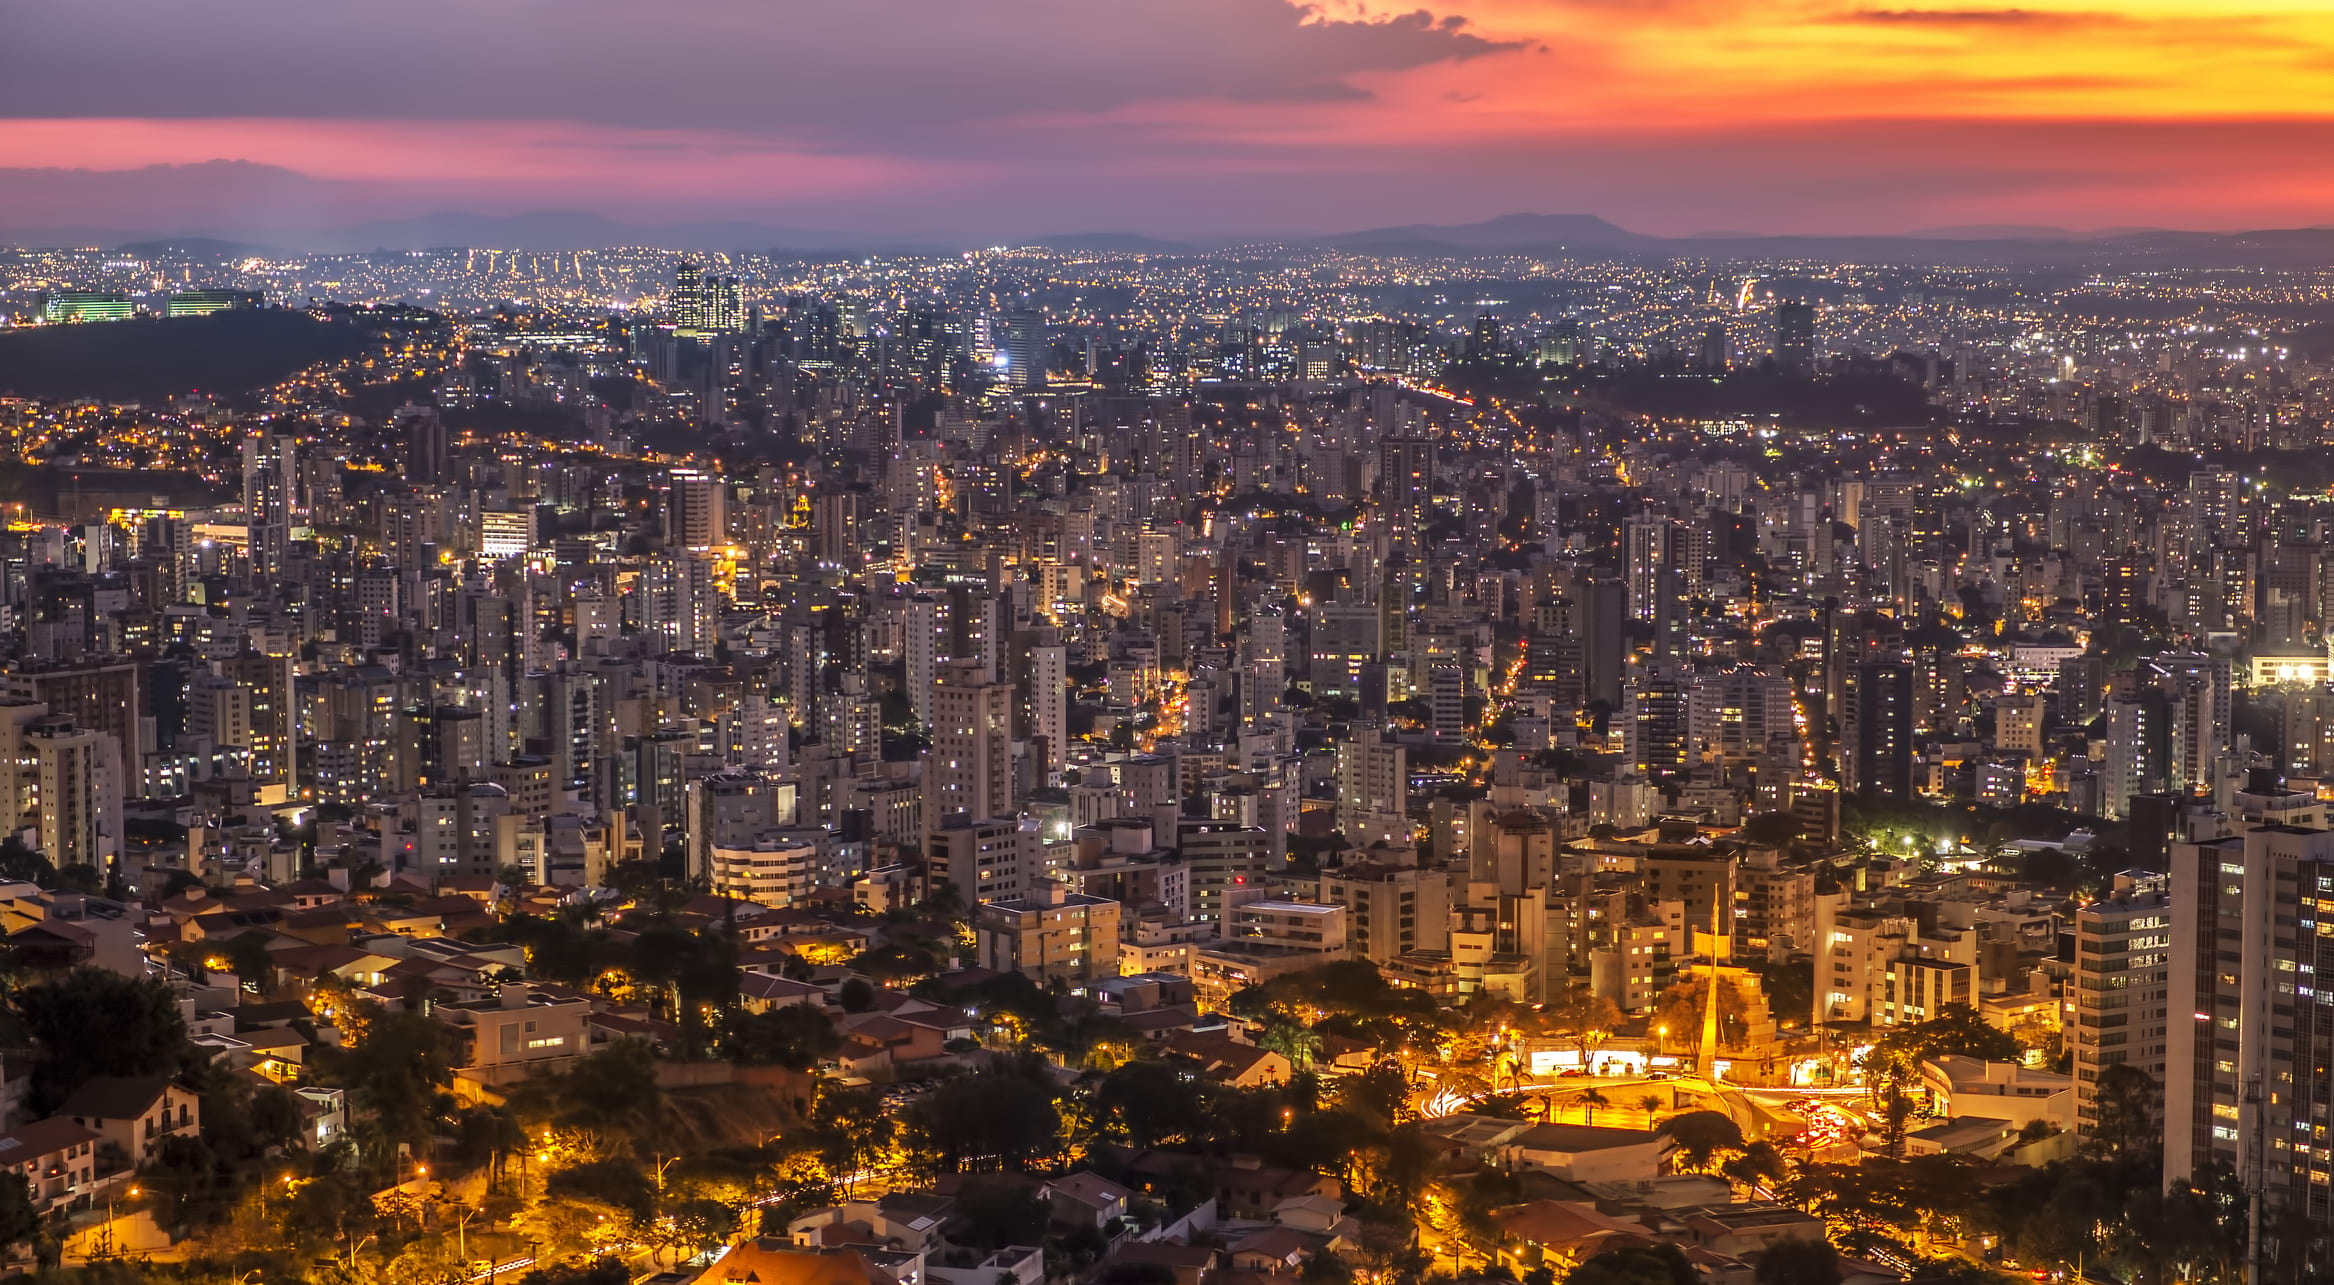 Belo Horizonte at night